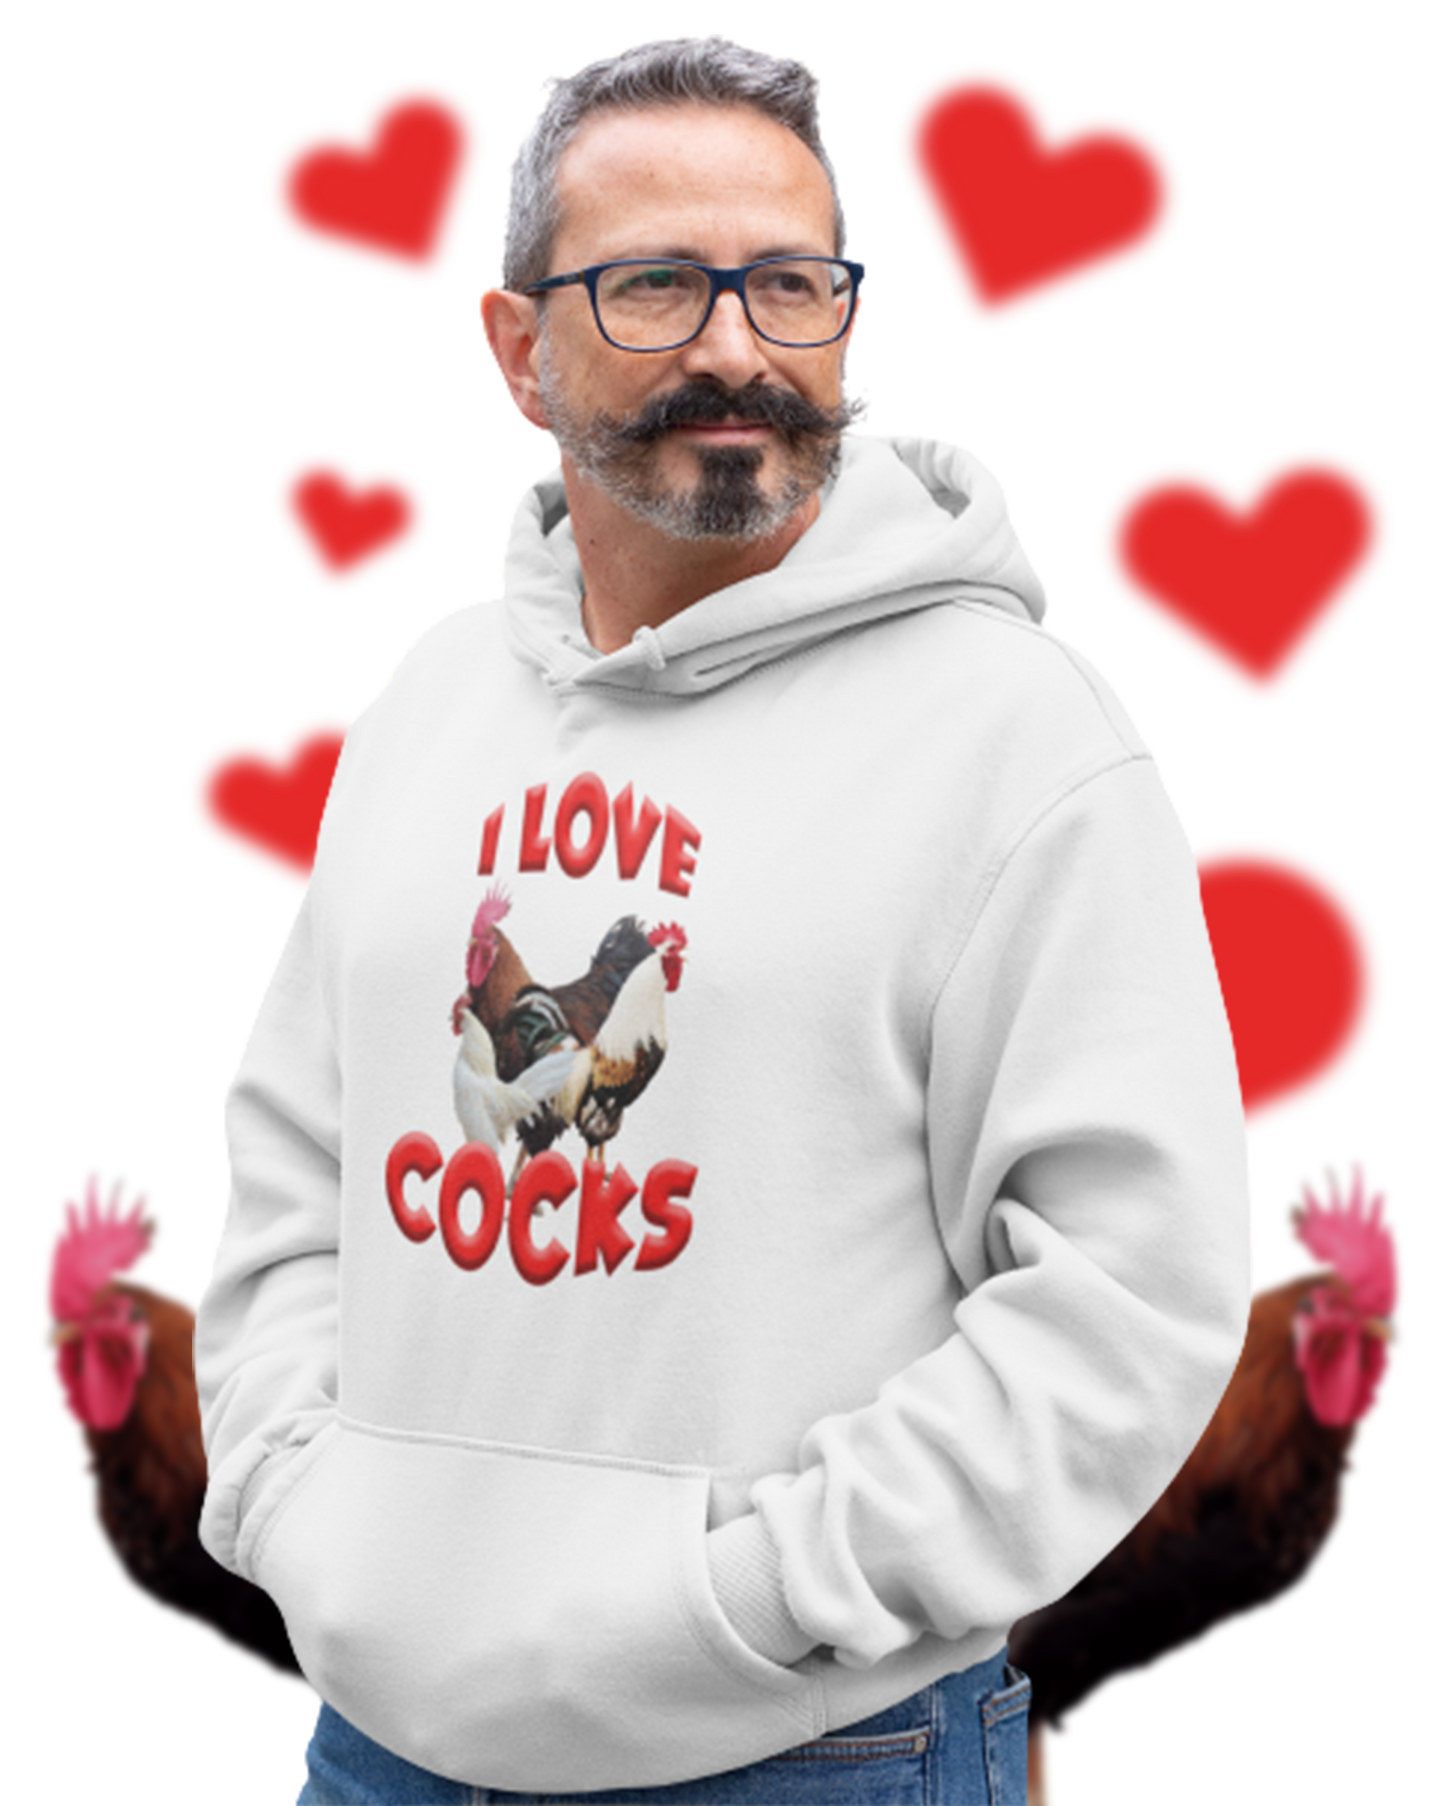 Bluza z kapturem „I Love Cocks”.